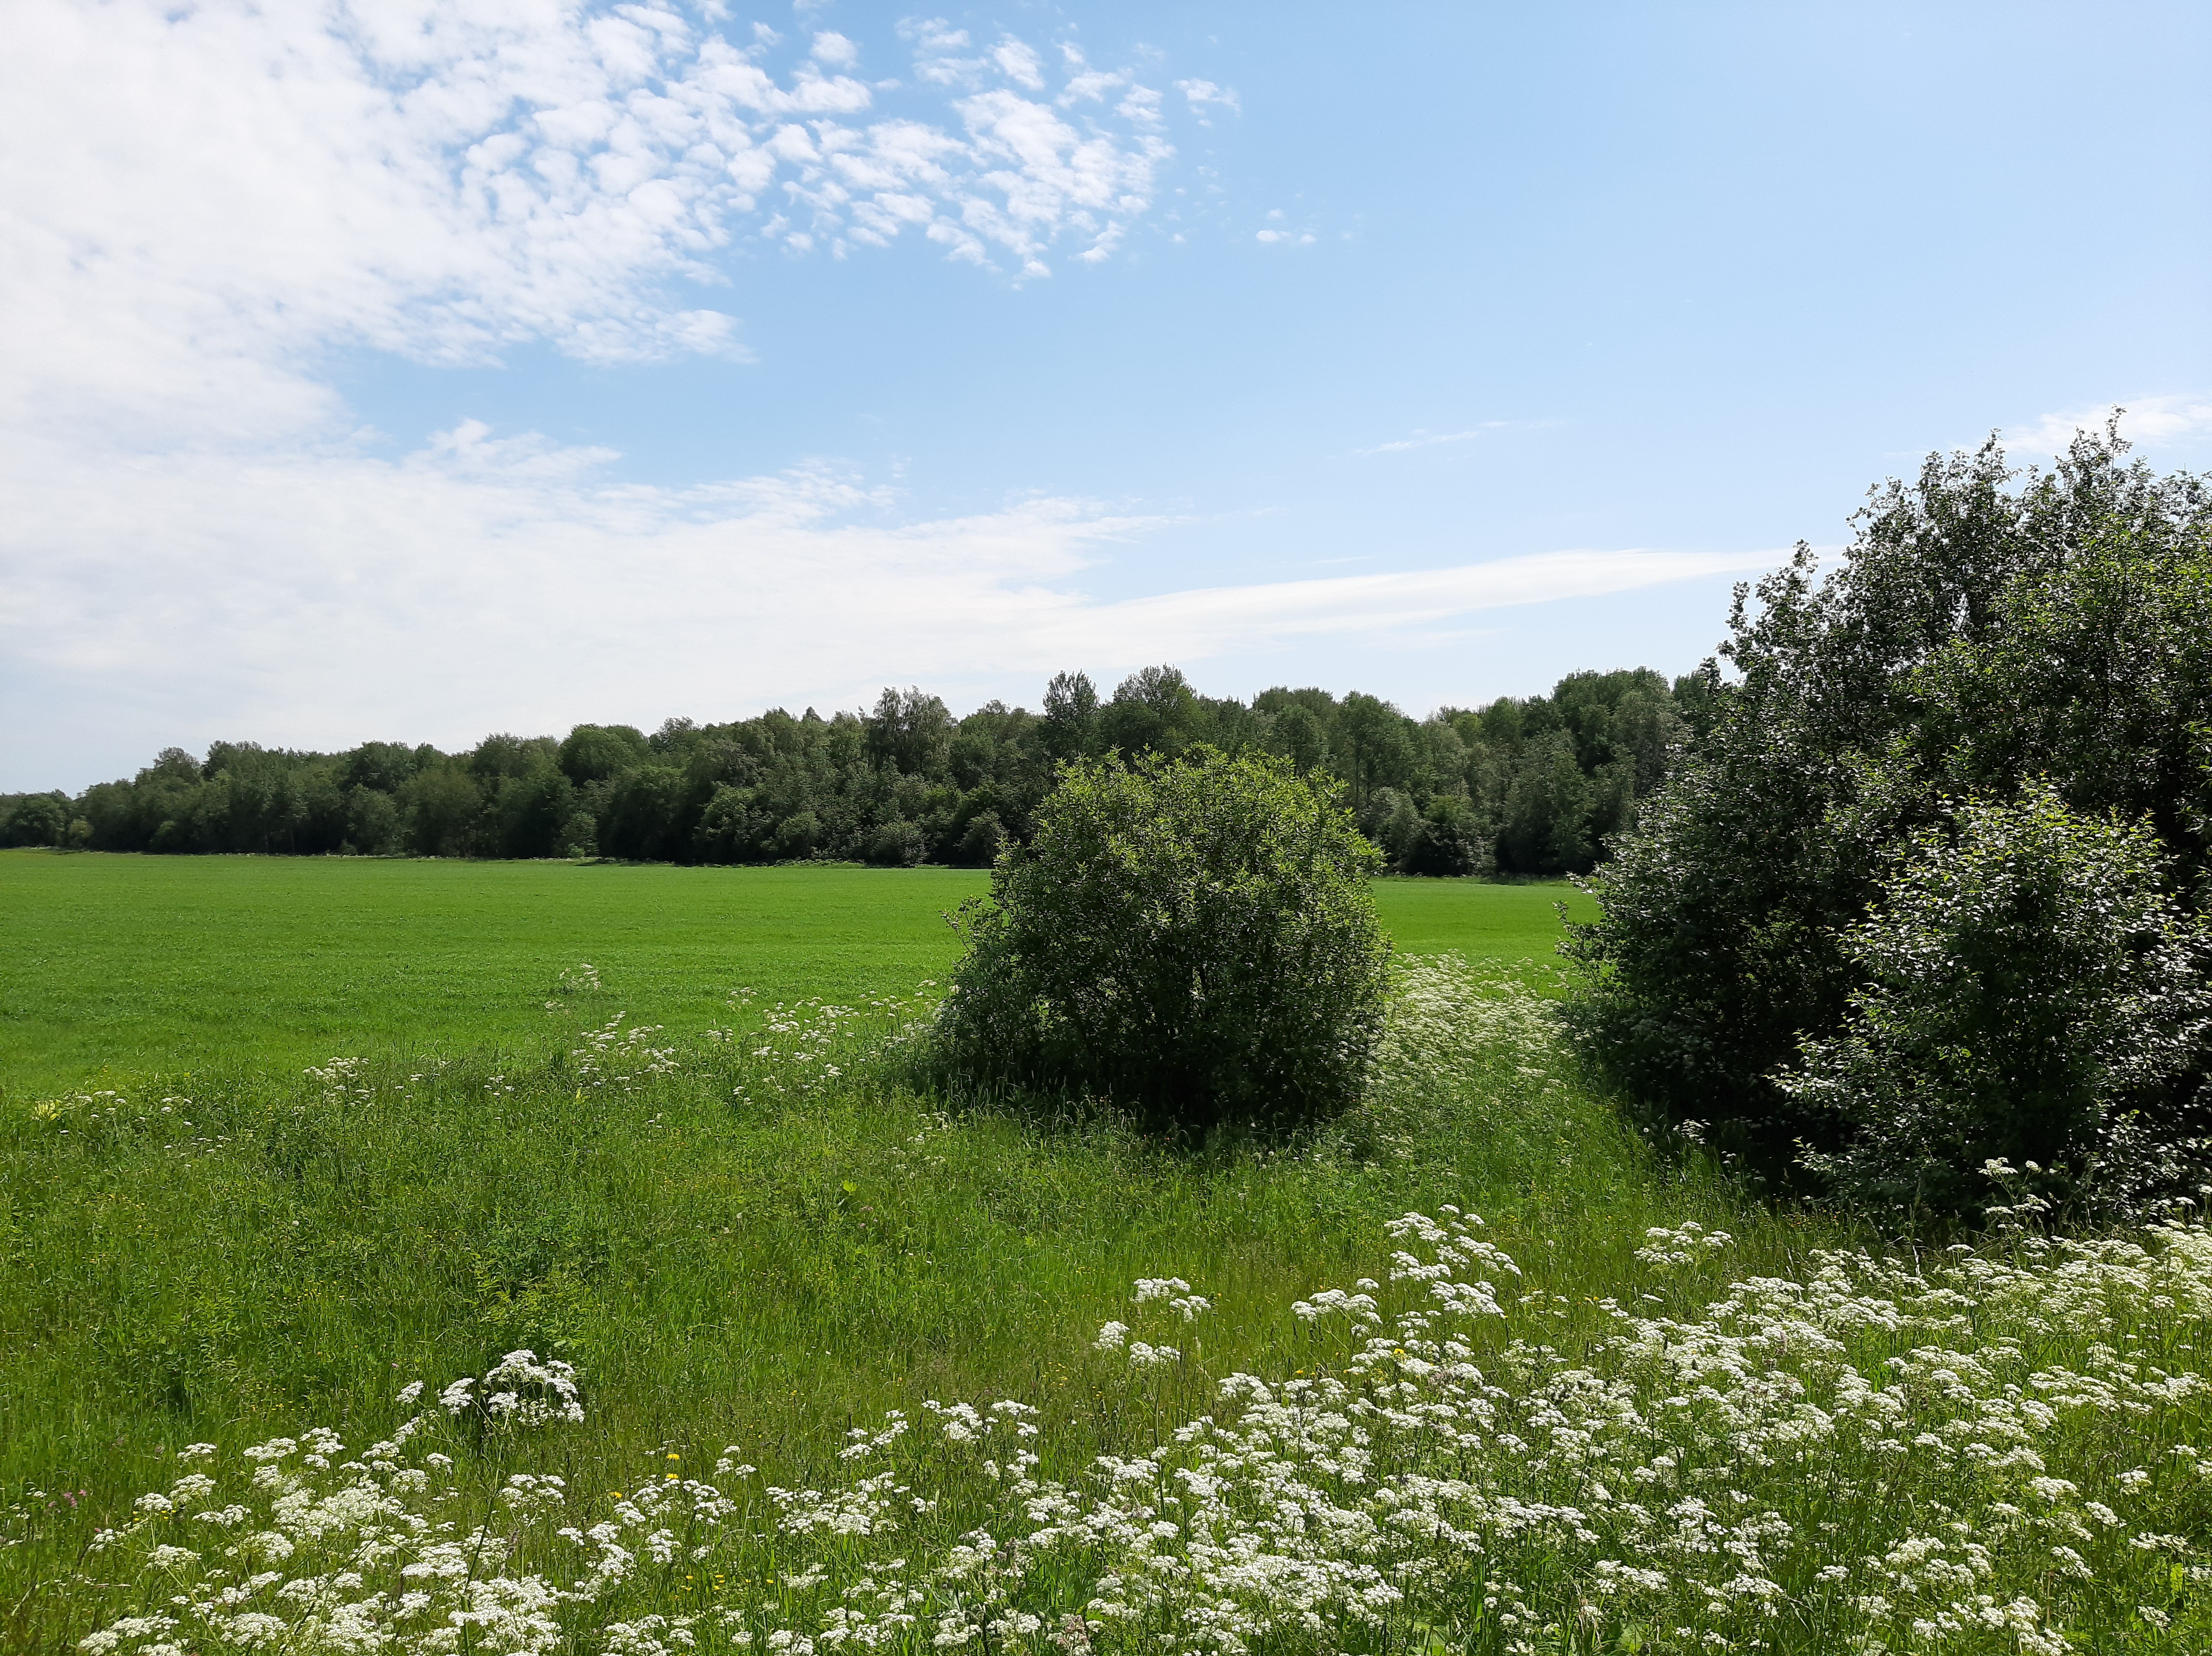 A green field near a dense forest